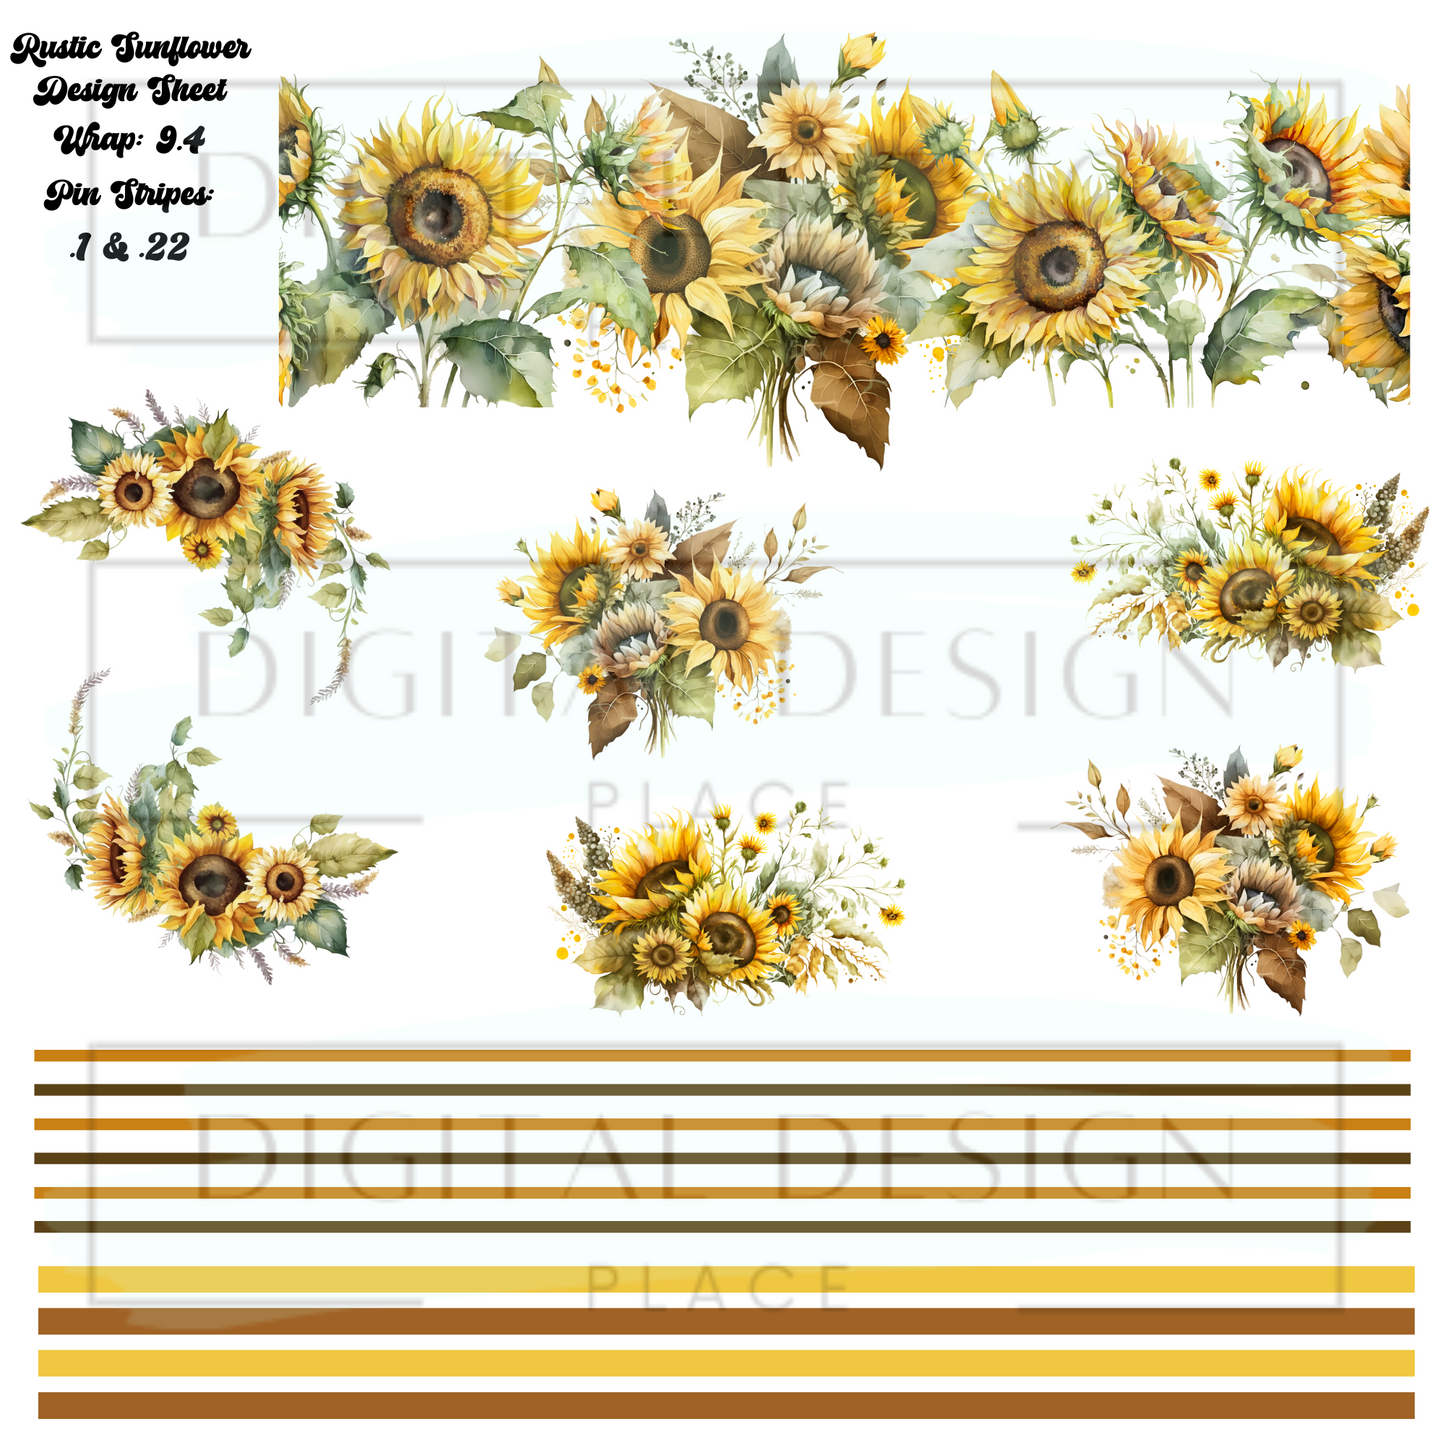 Rustic Sunflower Design Sheet DS24